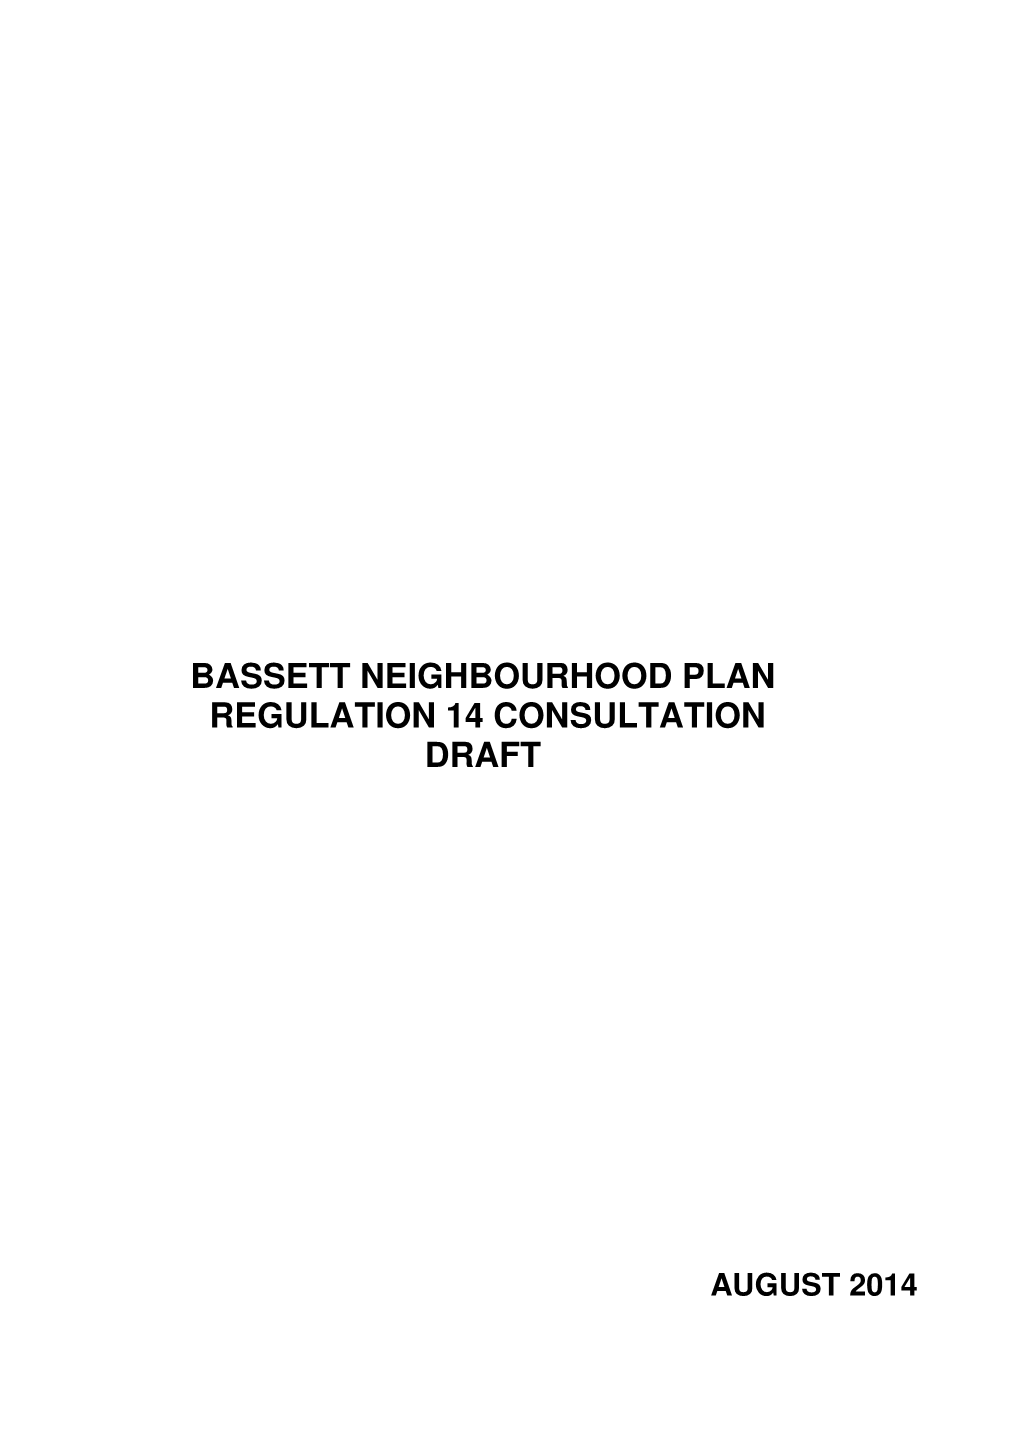 Bassett Neighbourhood Plan Regulation 14 Consultation Draft